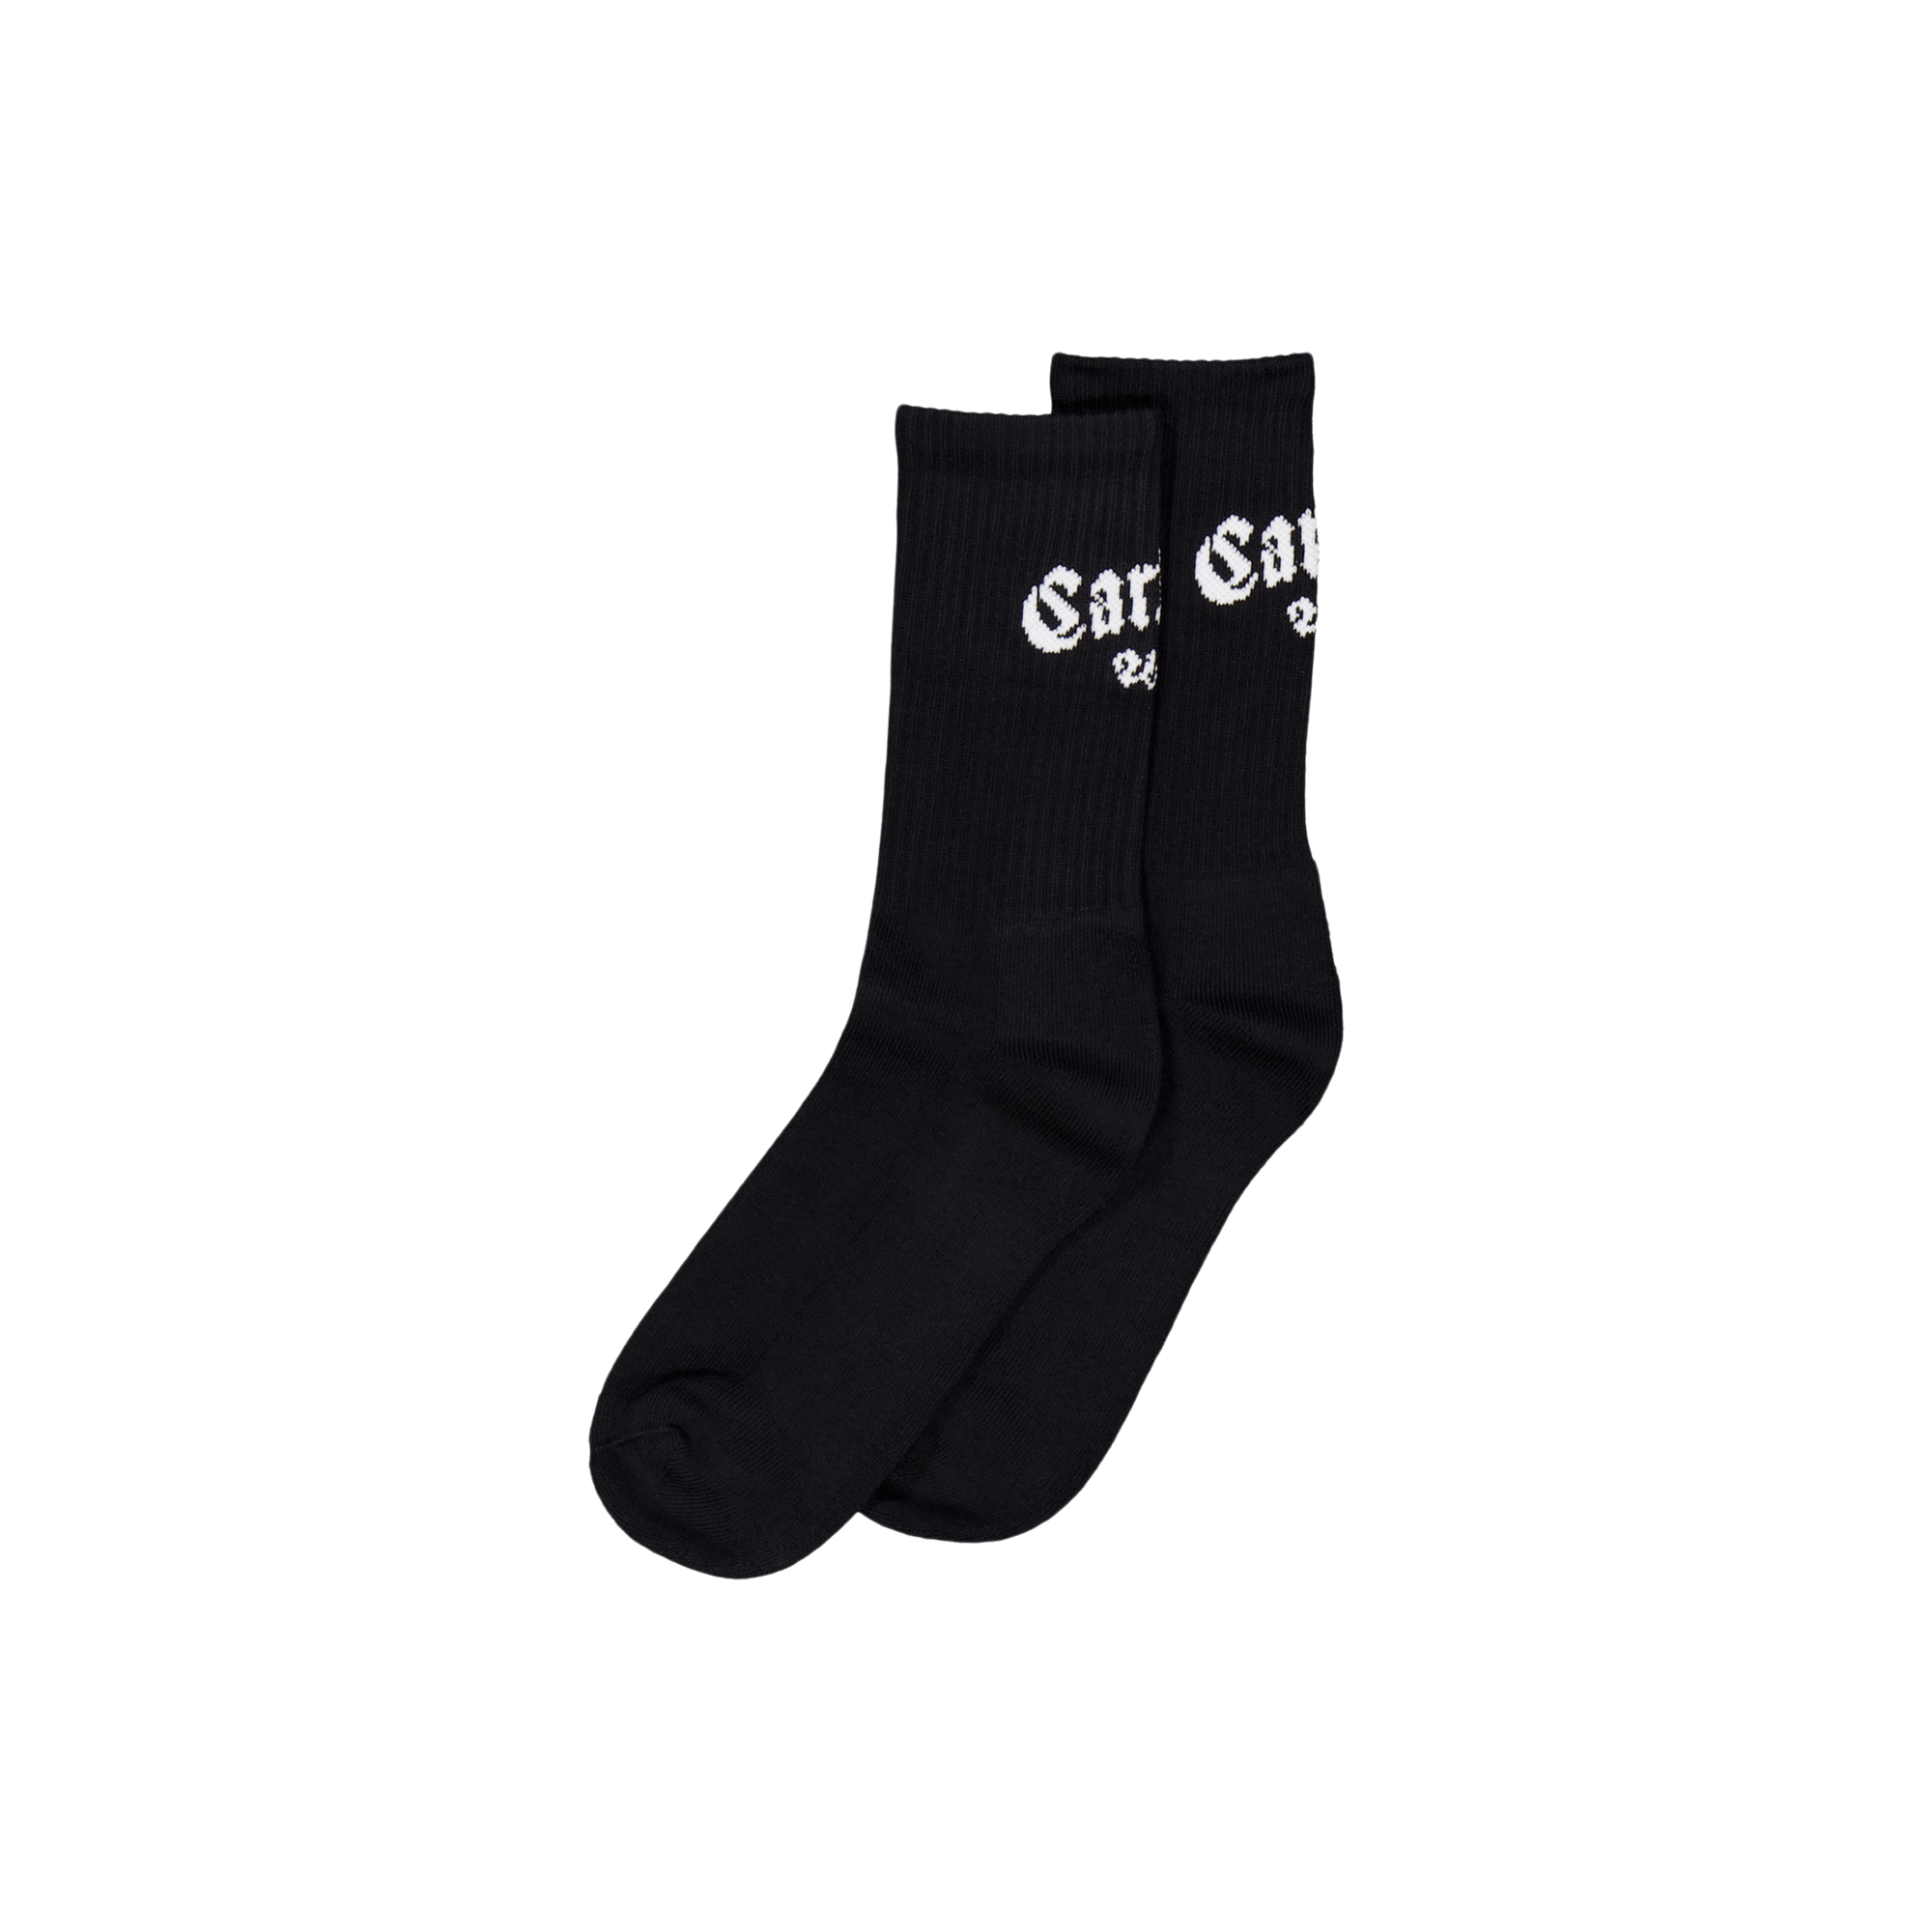 Onyx Socks Black / White